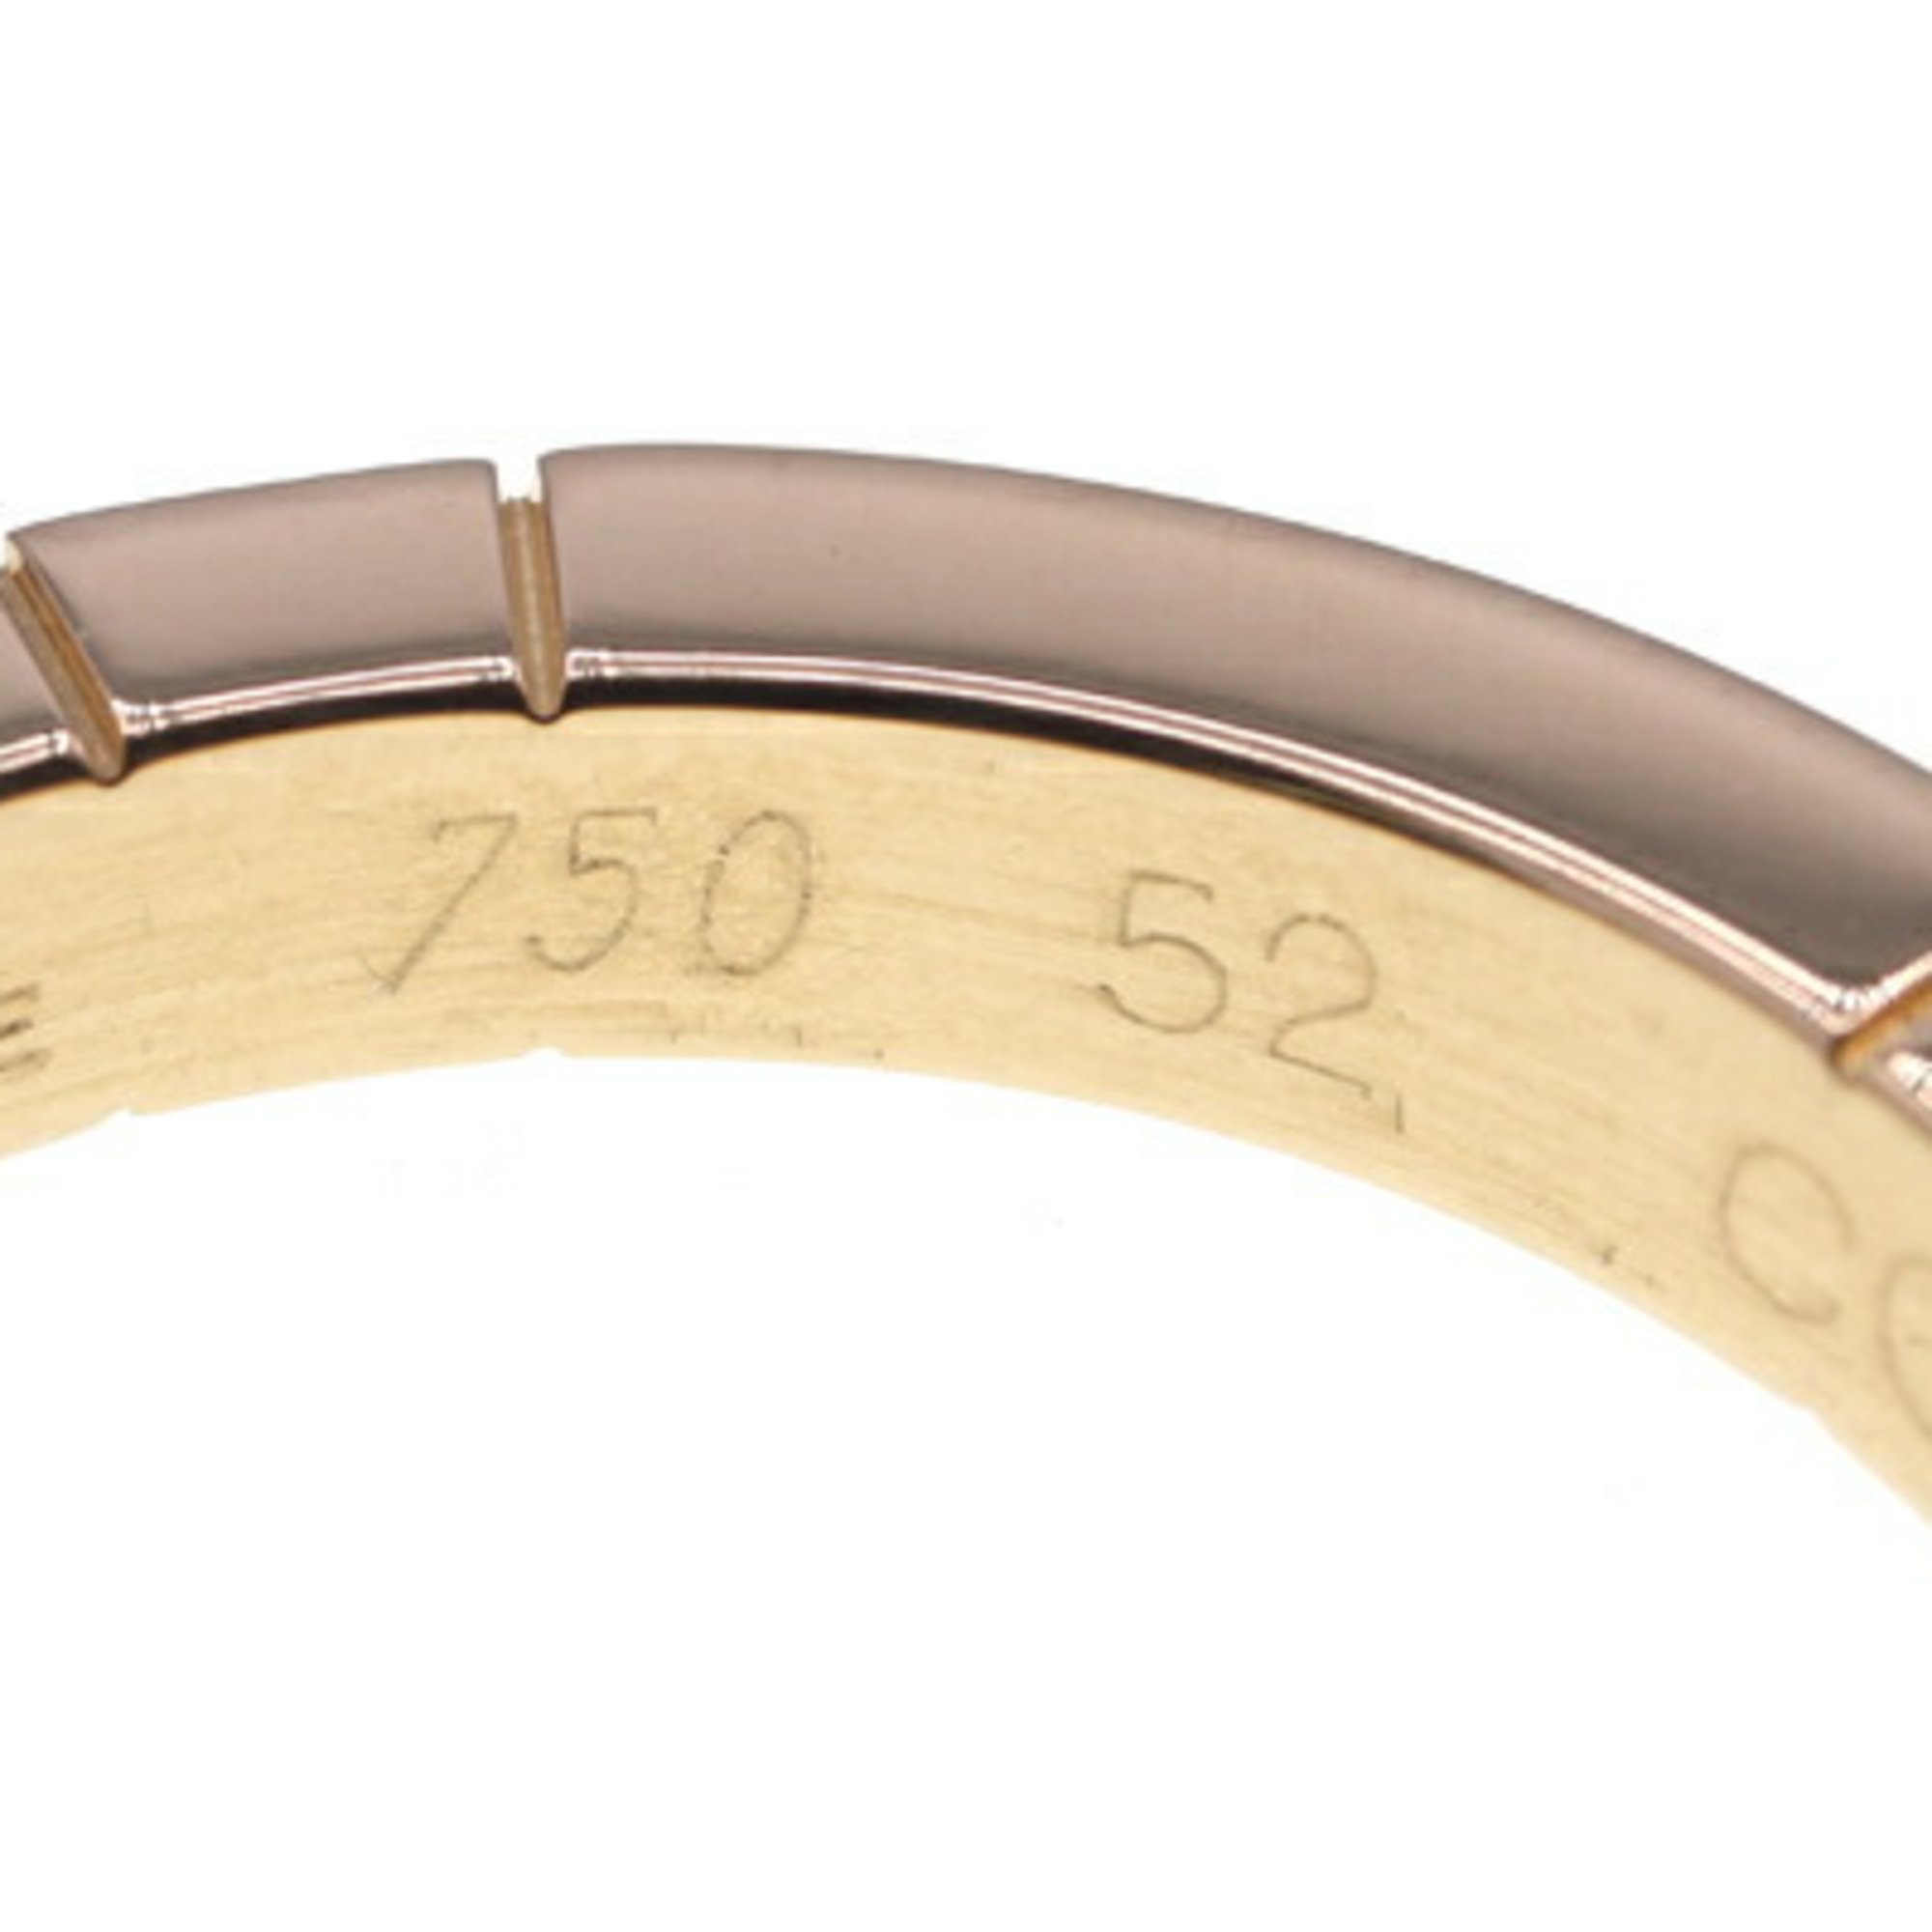 Cartier Ring Lanier B4044952 750 YG Size 52 No. 12 Women's Men's